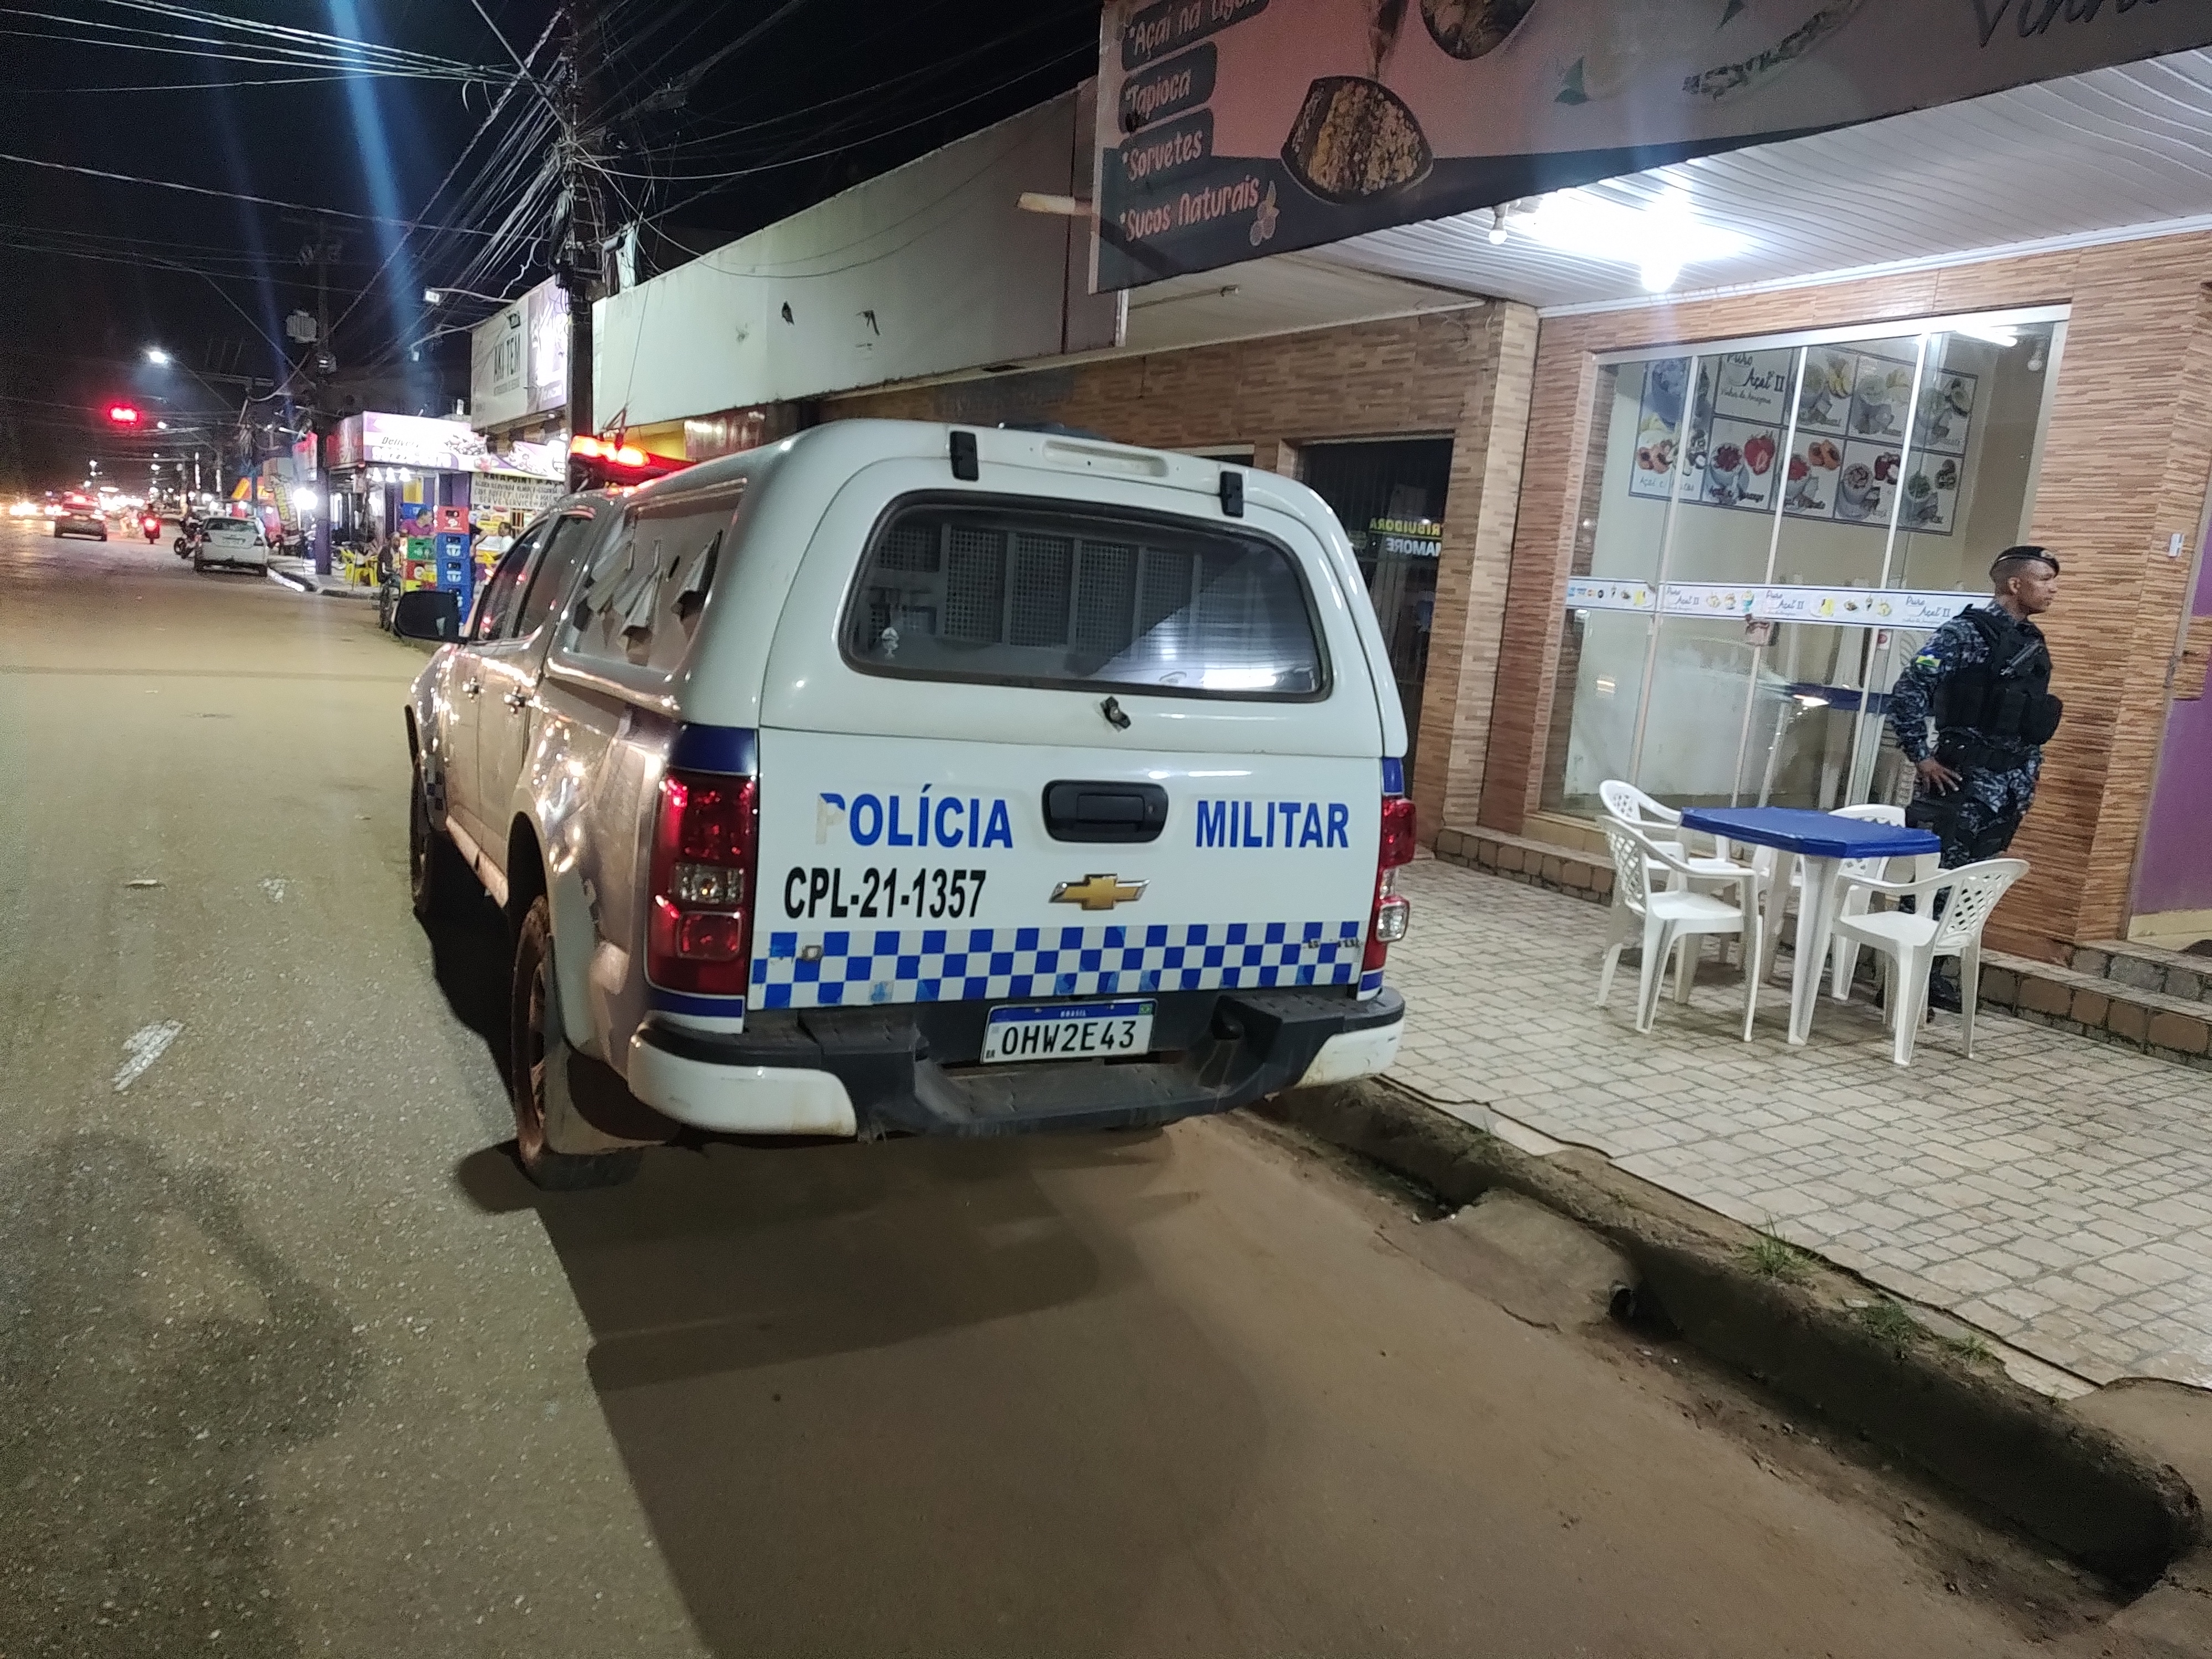 VÍDEO: Roubo em andamento e PM faz cerco na zona Leste de Porto Velho 